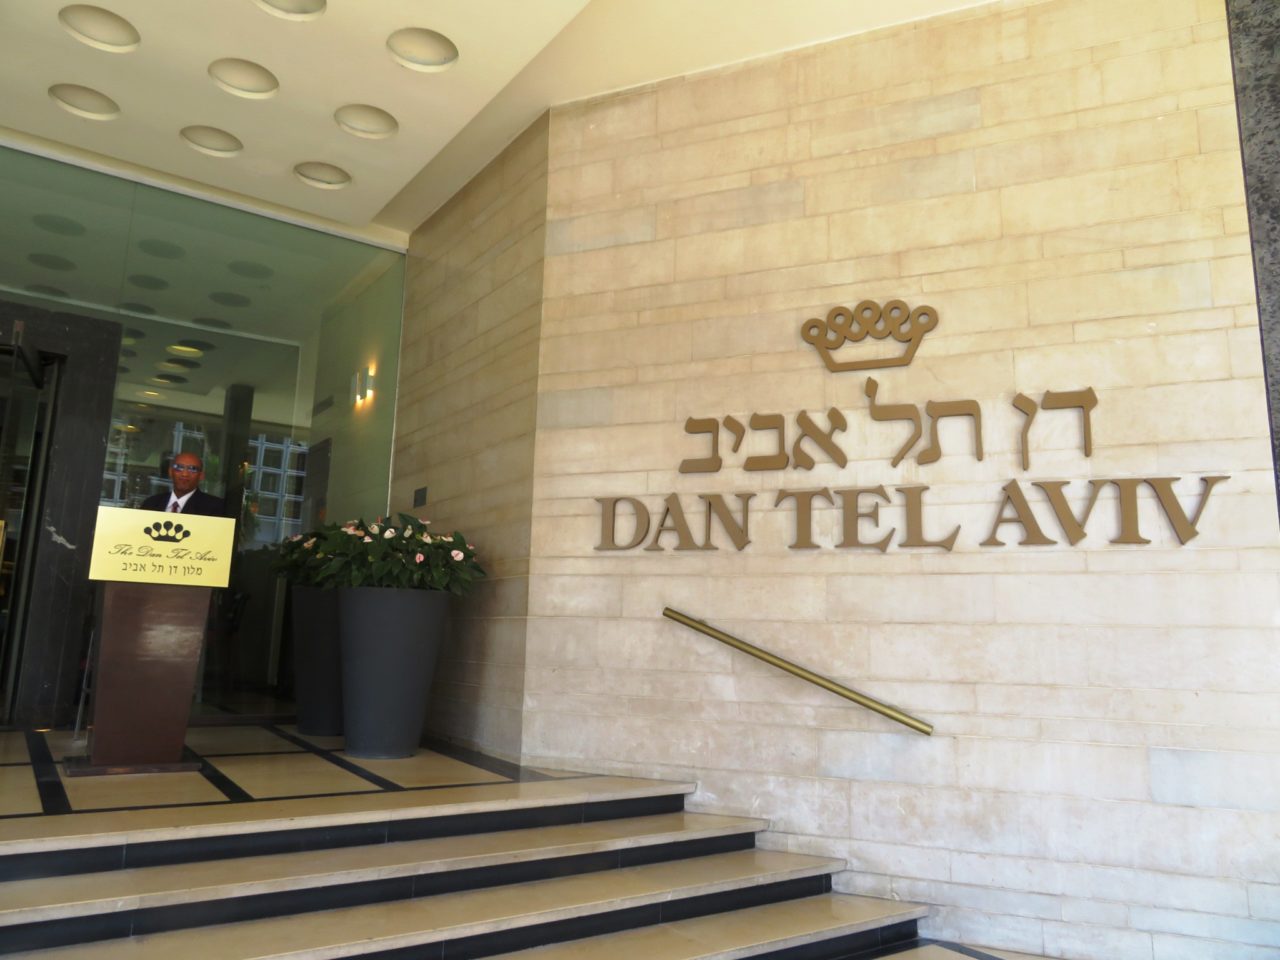 Vacationing in Israel ... The Dan Tel Aviv Hotel